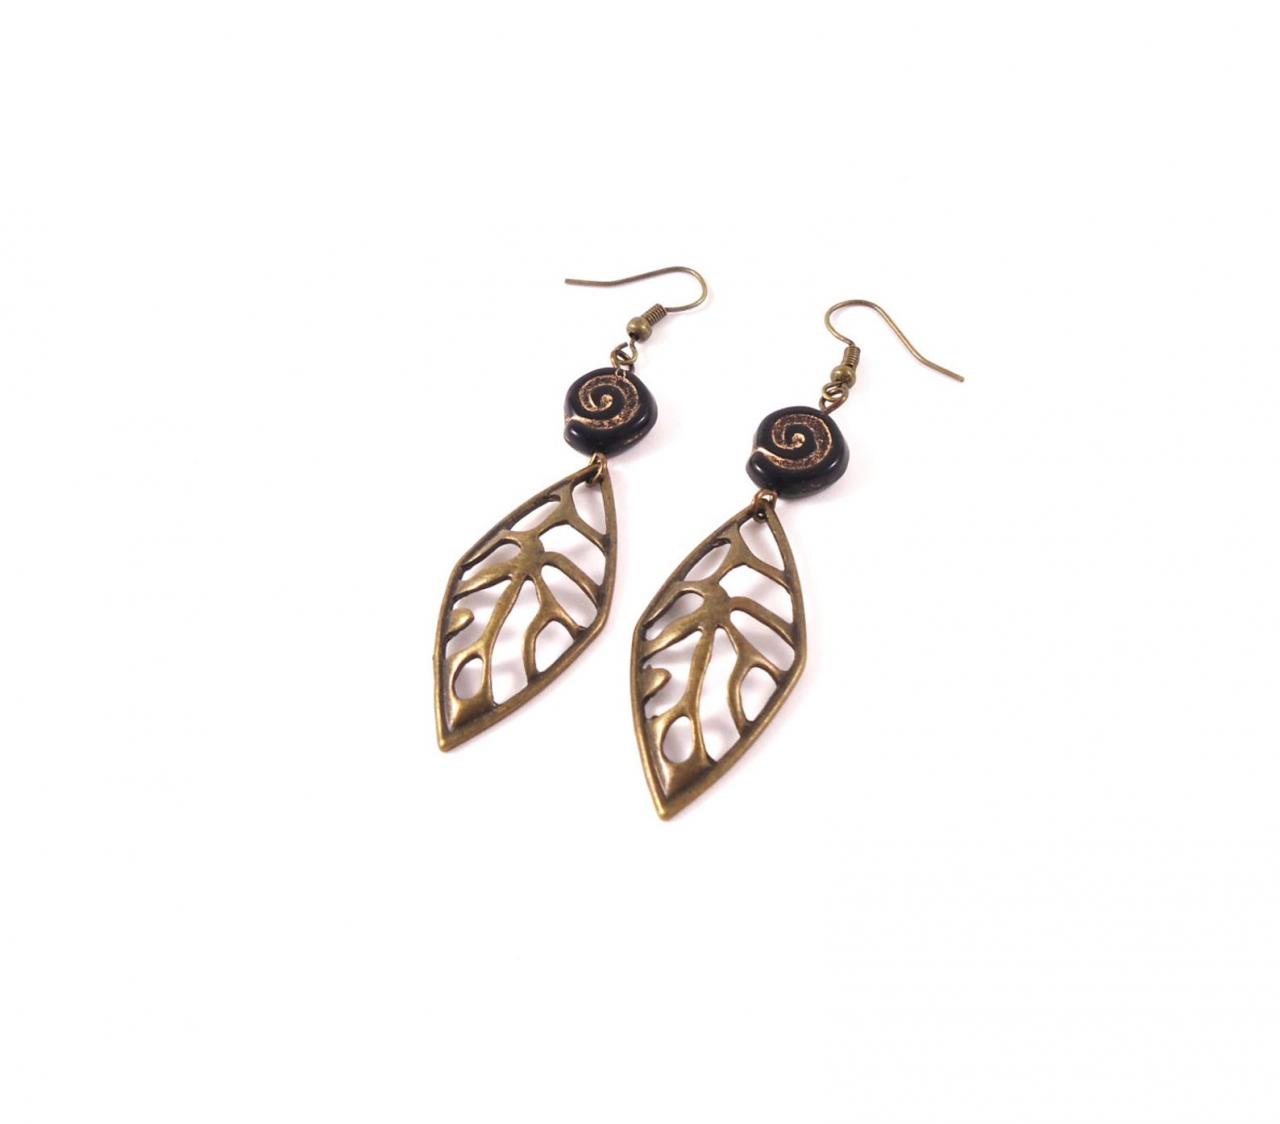 Gypsy Earrings - Ethnic Earrings - Black Minimalist Earrings - Black Bohemian Jewelry - Spiral Earrings - Black Tribal Jewelry - Boho Chic